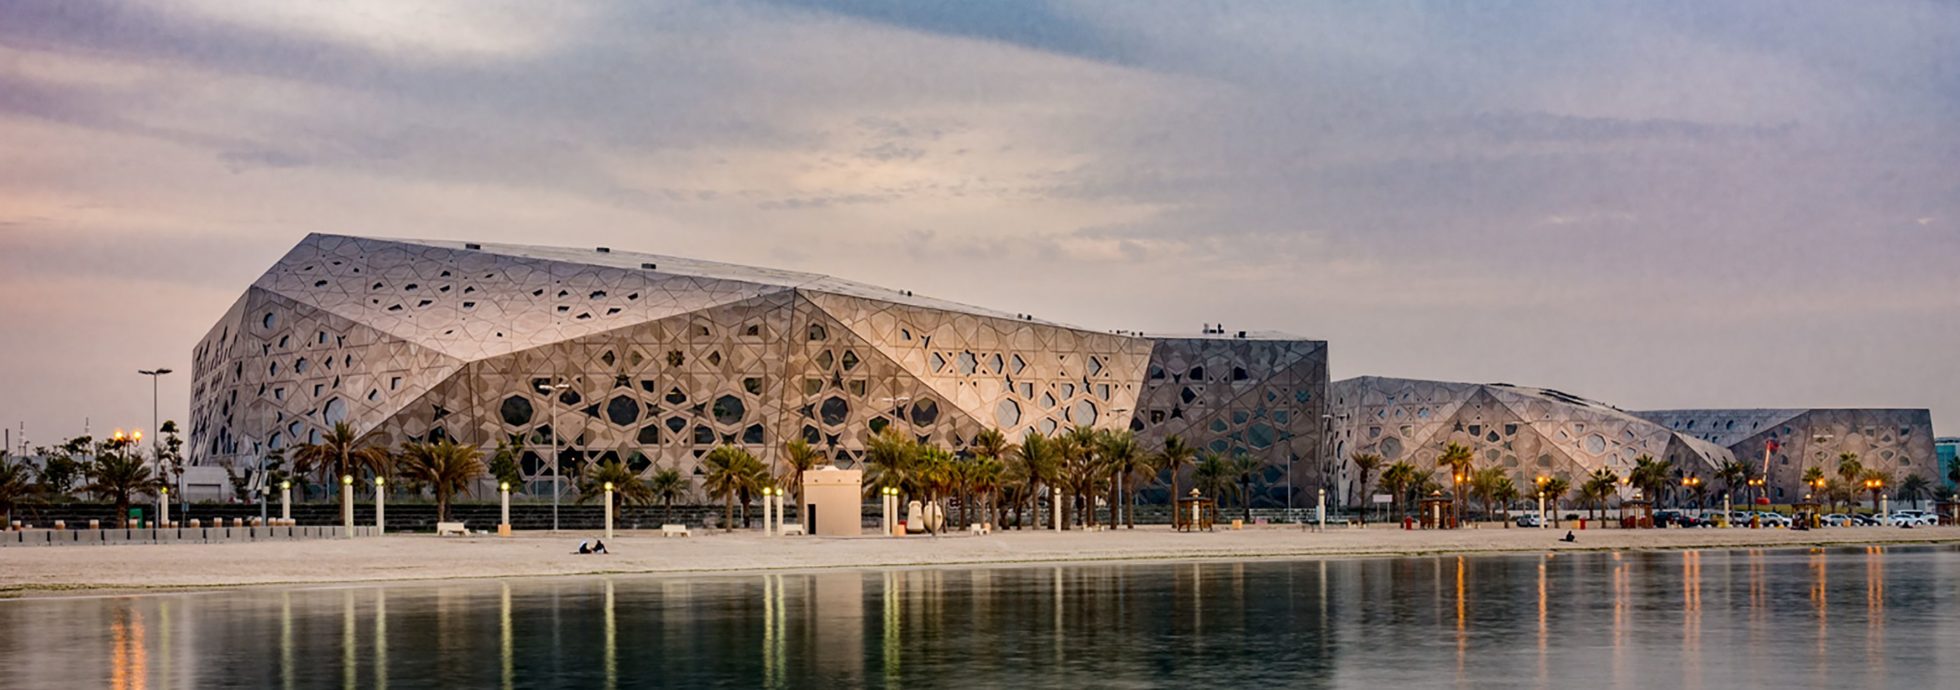 اكتشف مركز الشيخ جابر الأحمد الثقافي الرائع - مركز للفنون والثقافة في مدينة الكويت